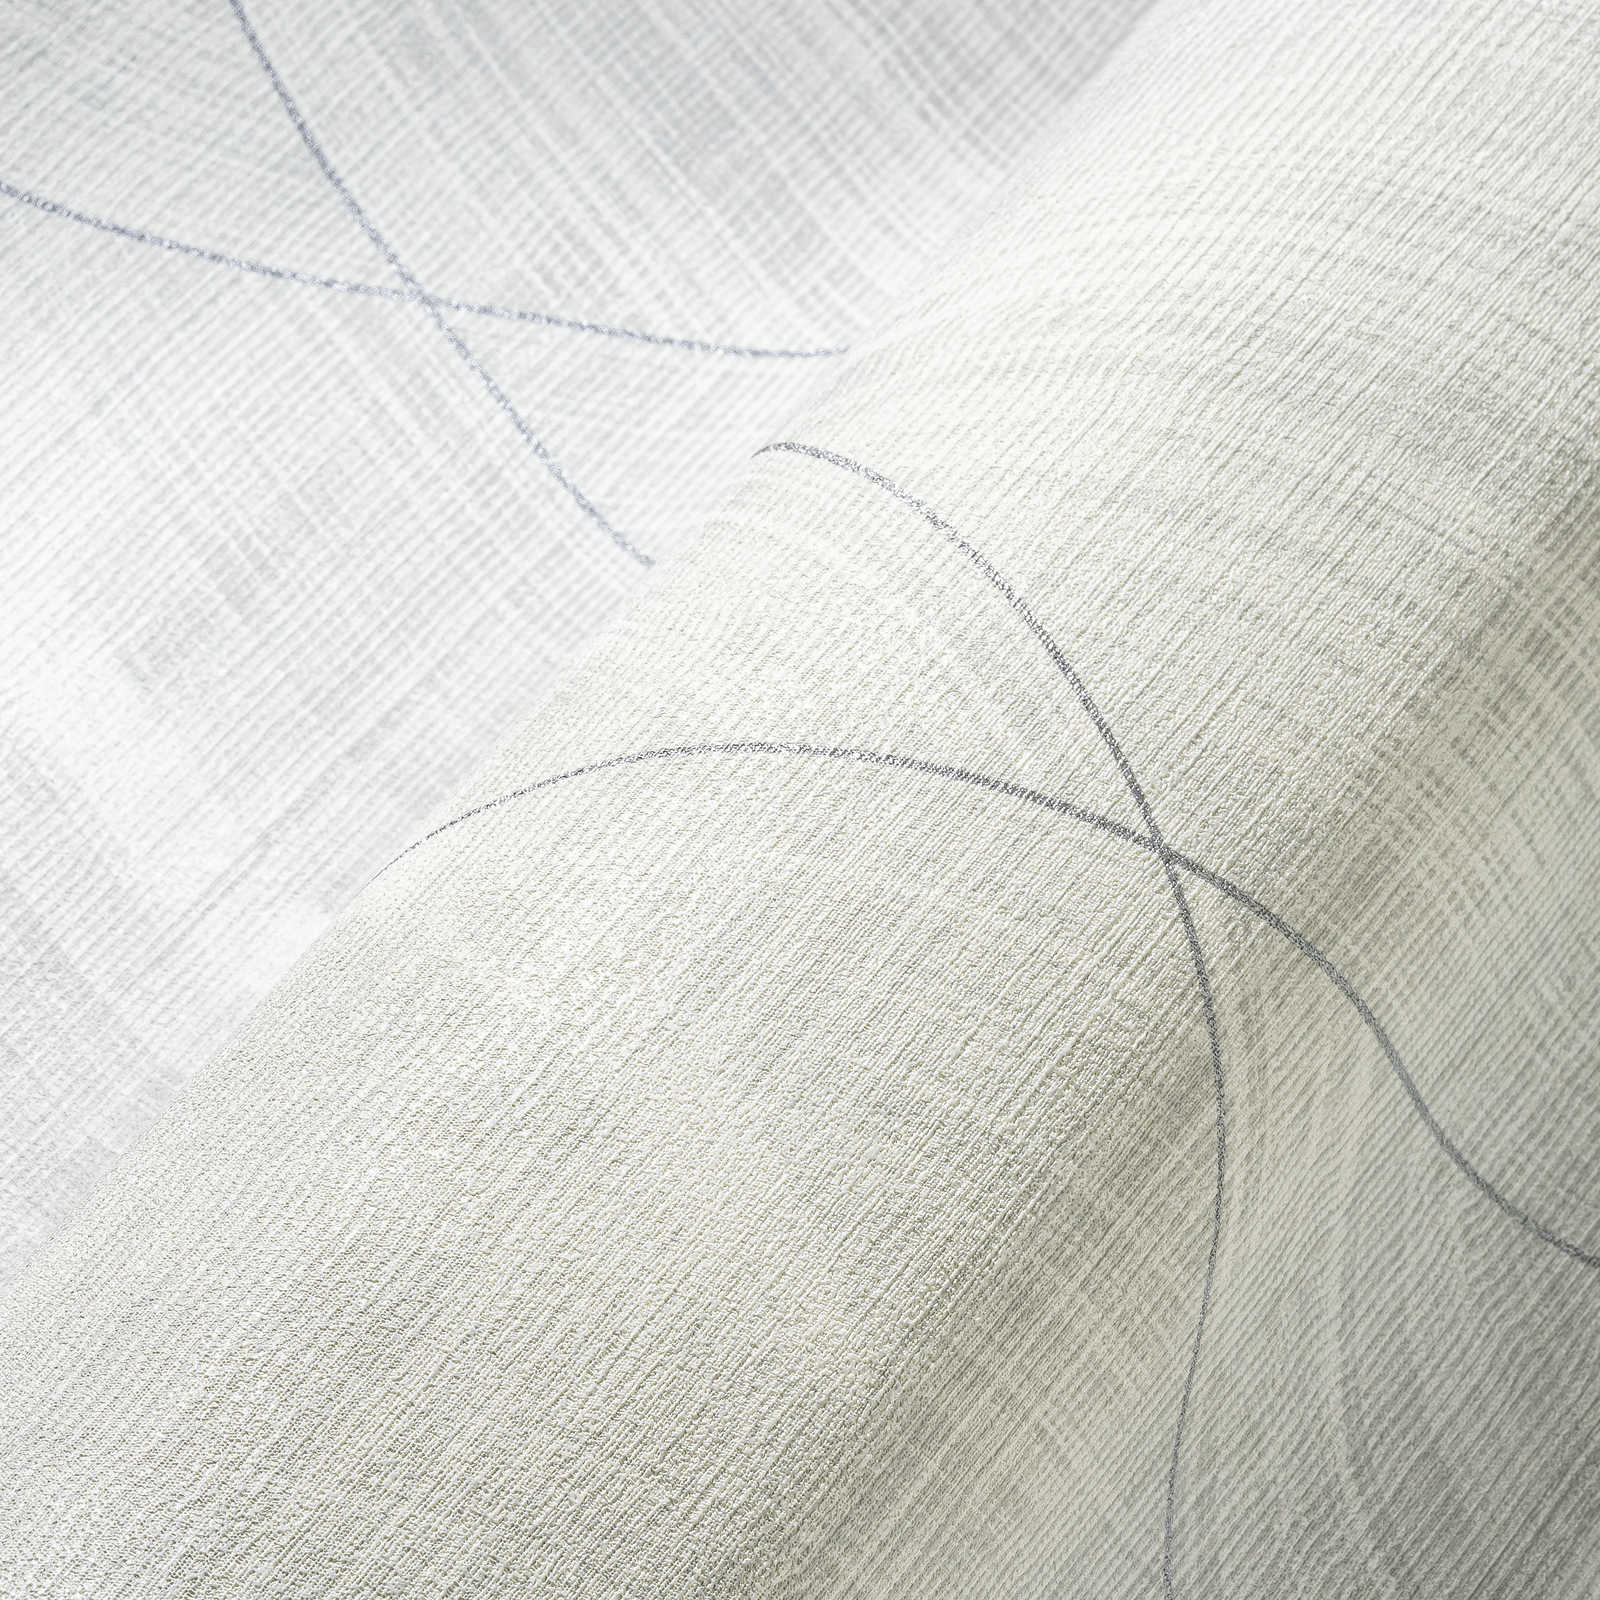             Papier peint aspect textile avec motif losange - métallique, blanc
        